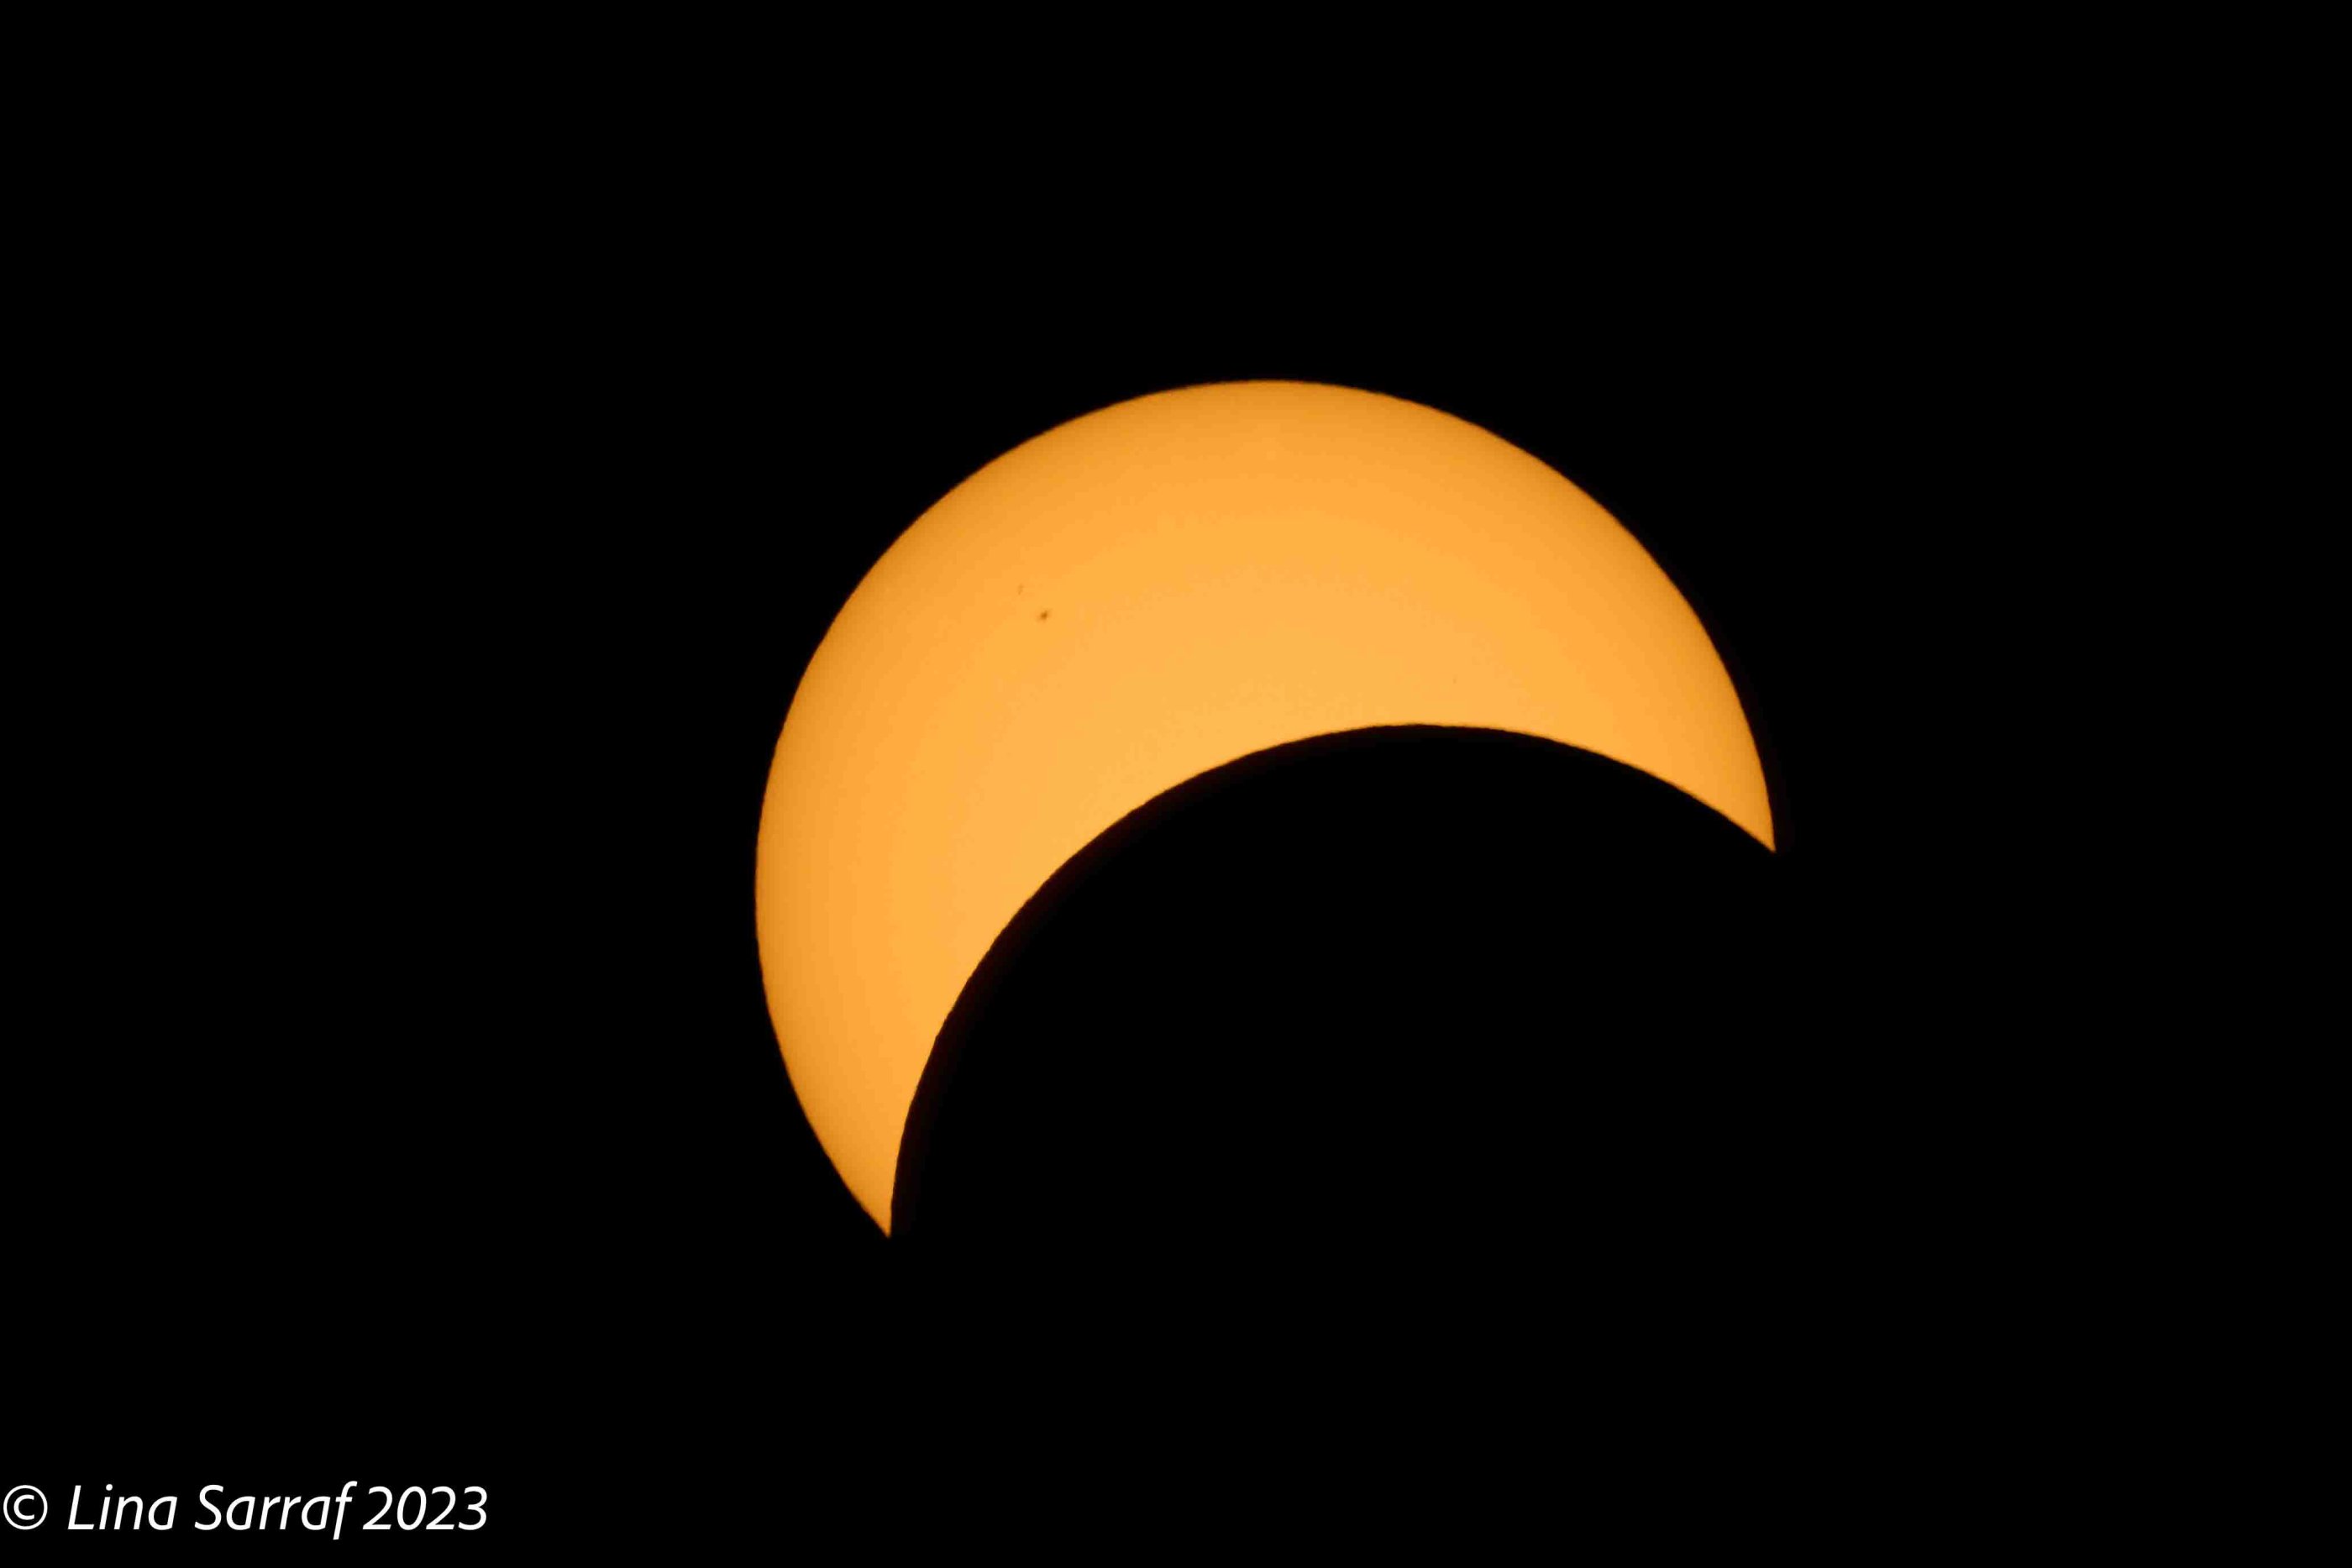  eclipse-4.jpg